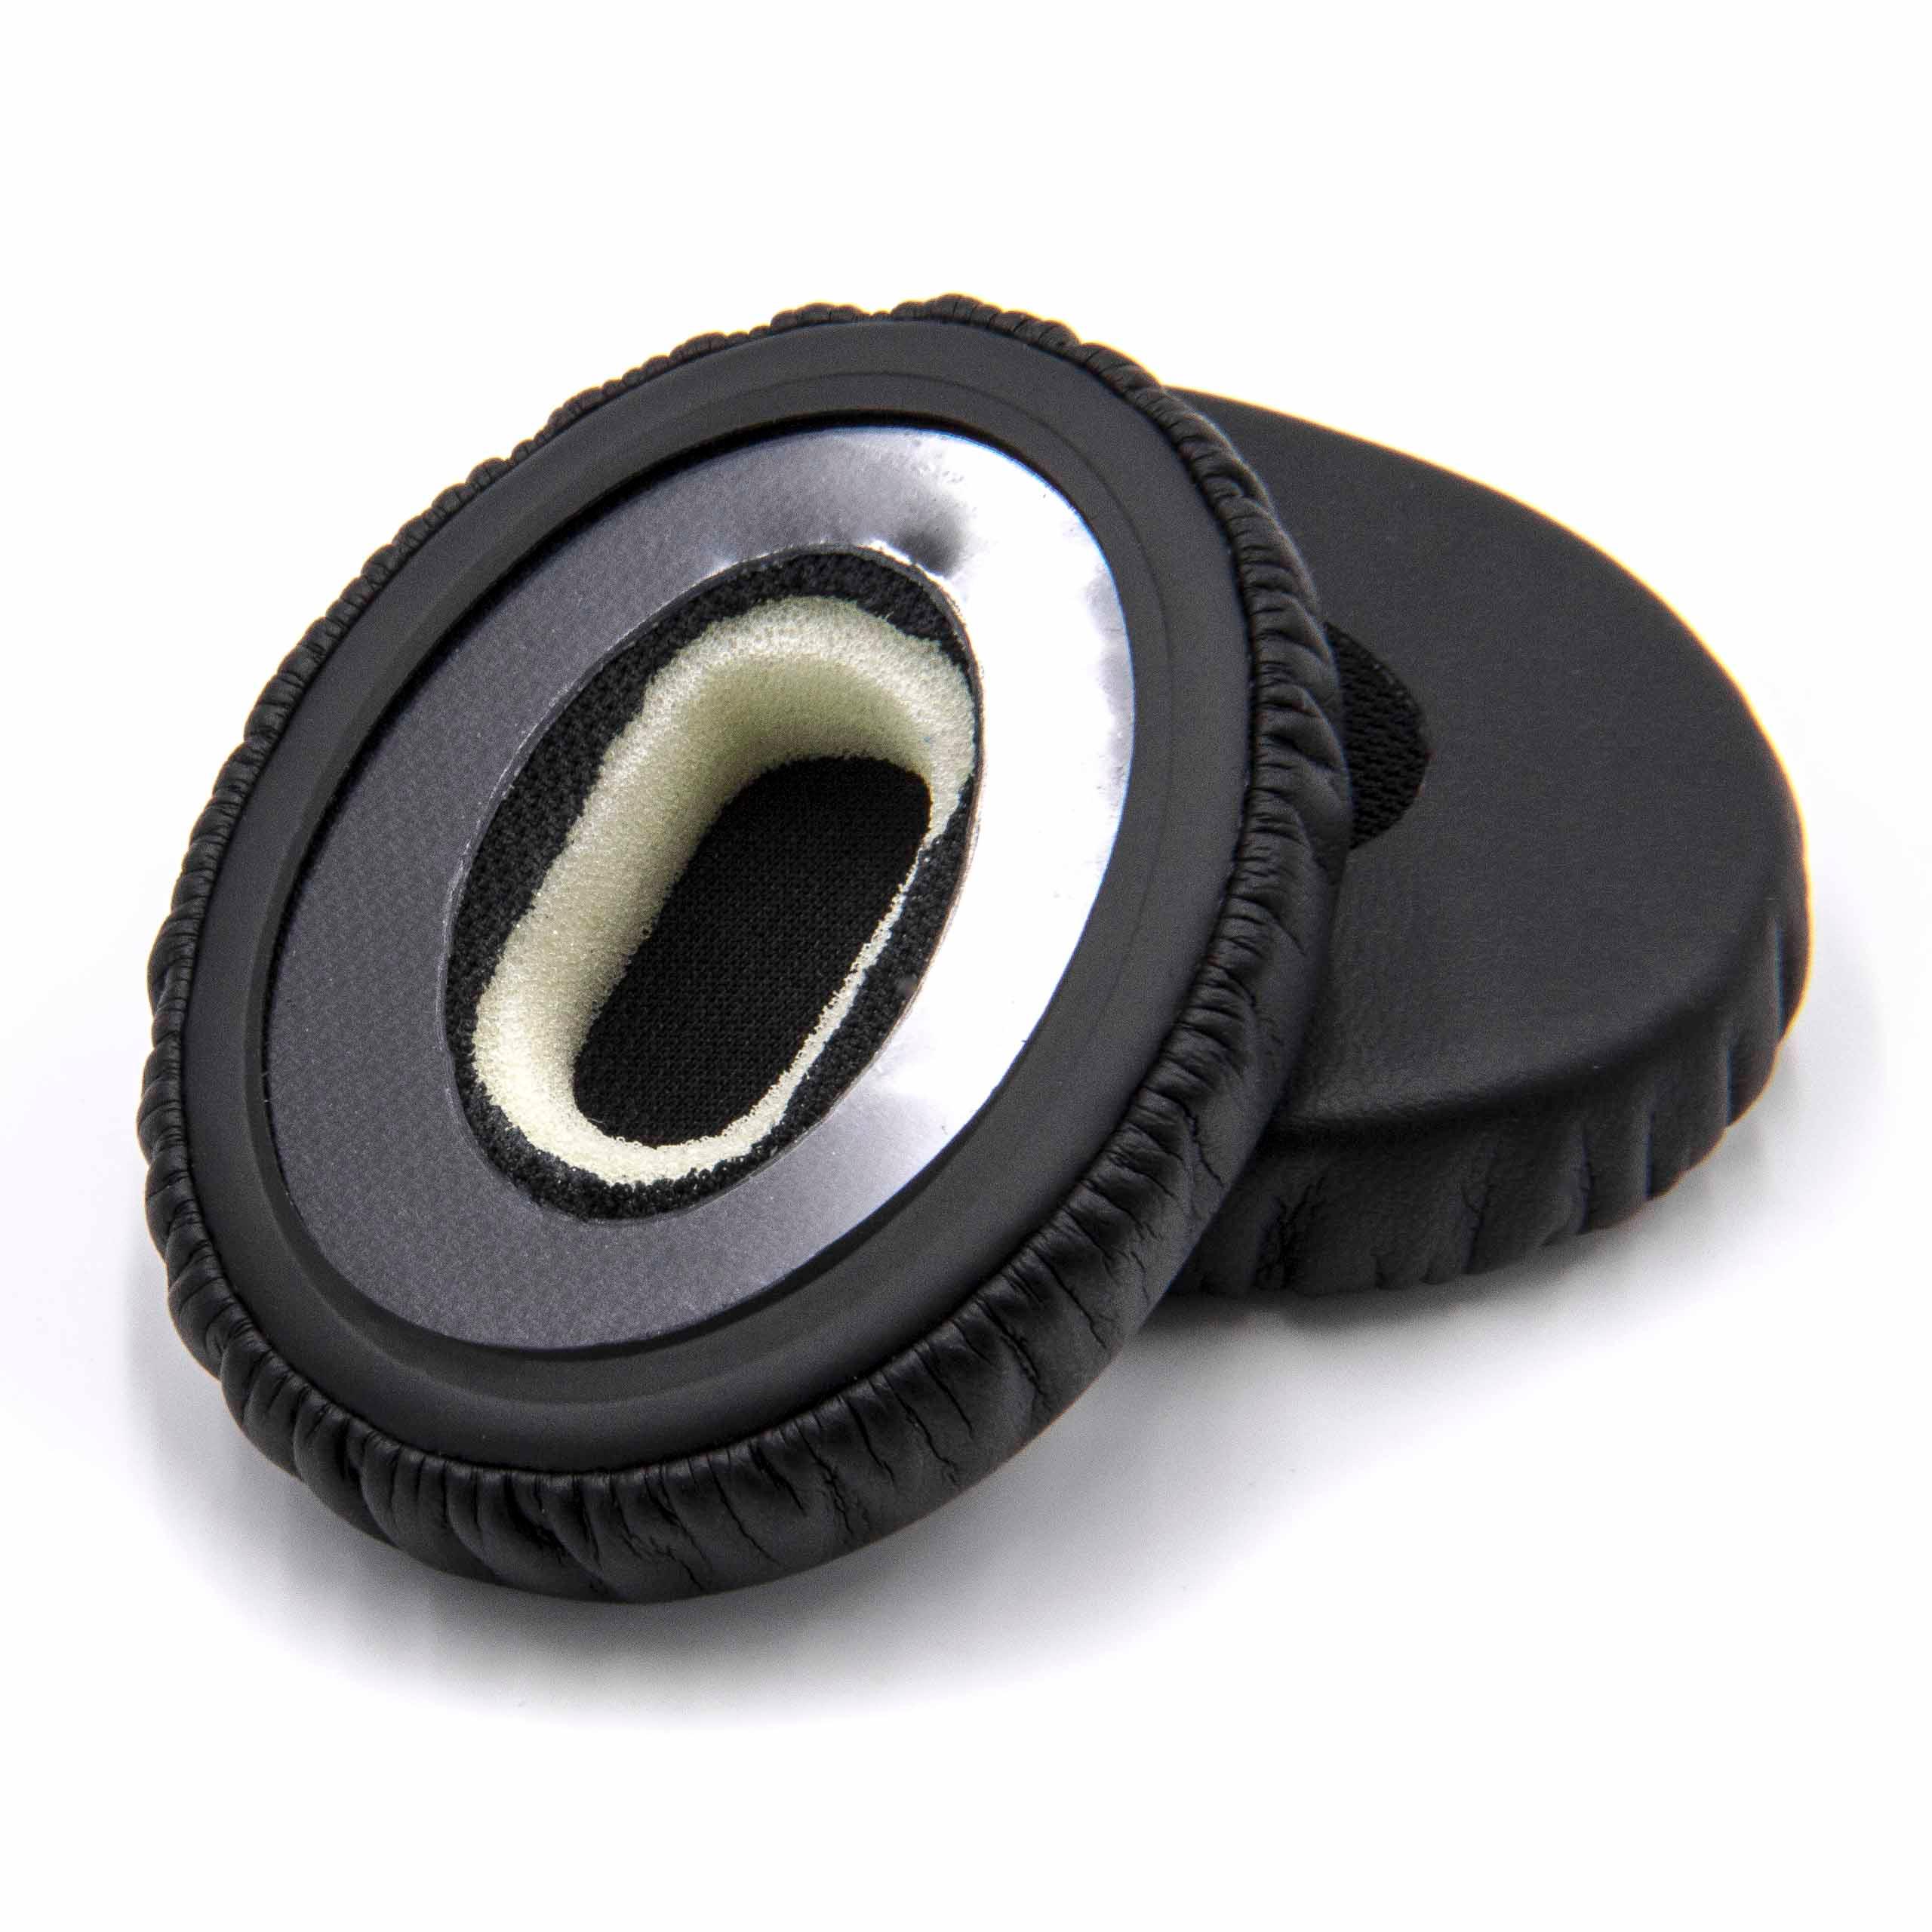 2x Ear Pads suitable for Bose OnEar Headphones etc. - synthetic fibre, 5.6 cm External Diameter